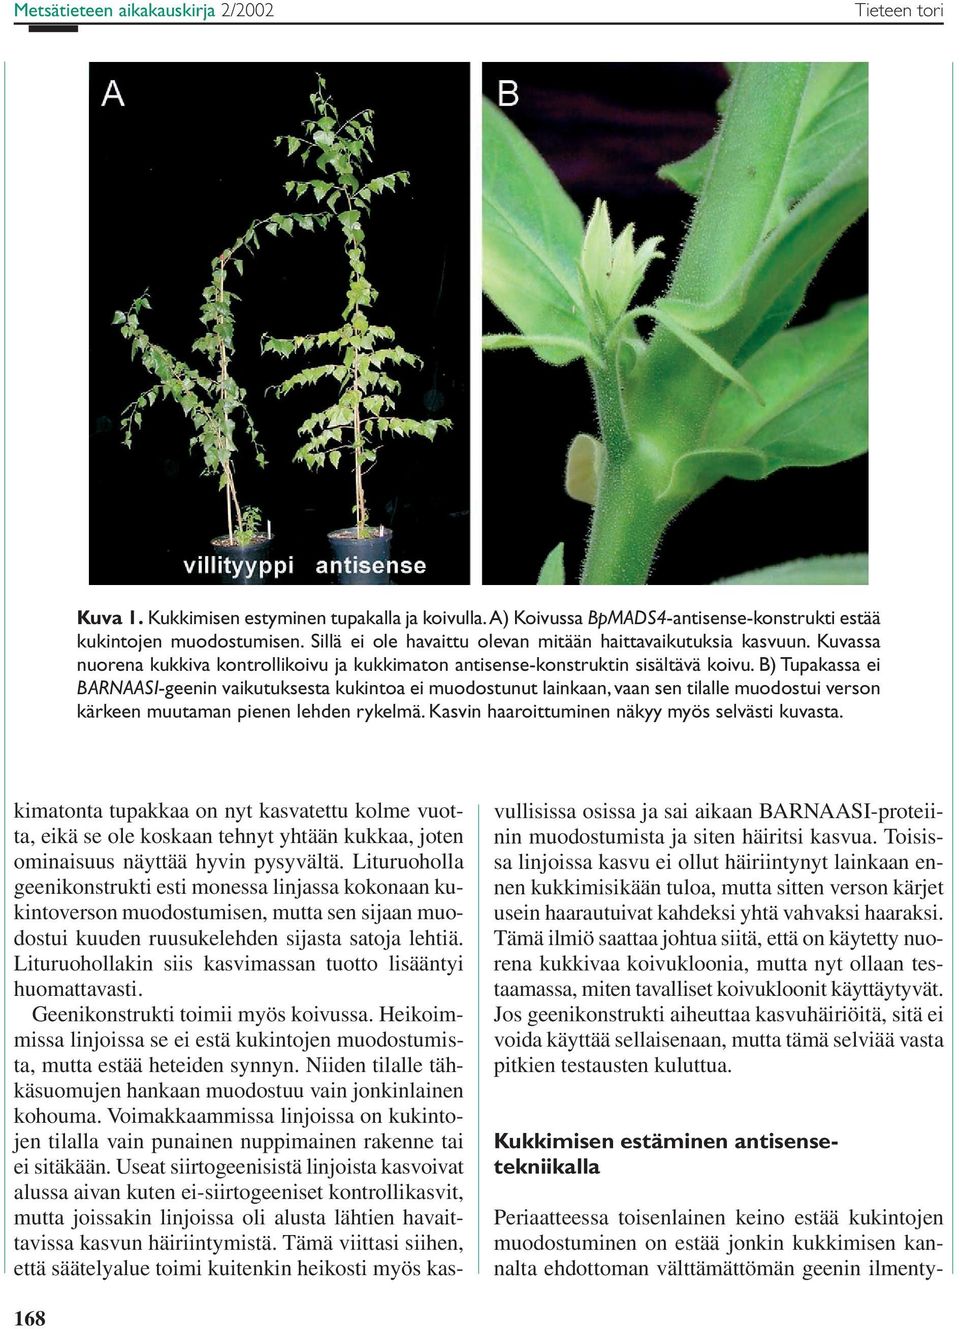 B) Tupakassa ei BARNAASI-geenin vaikutuksesta kukintoa ei muodostunut lainkaan, vaan sen tilalle muodostui verson kärkeen muutaman pienen lehden rykelmä.